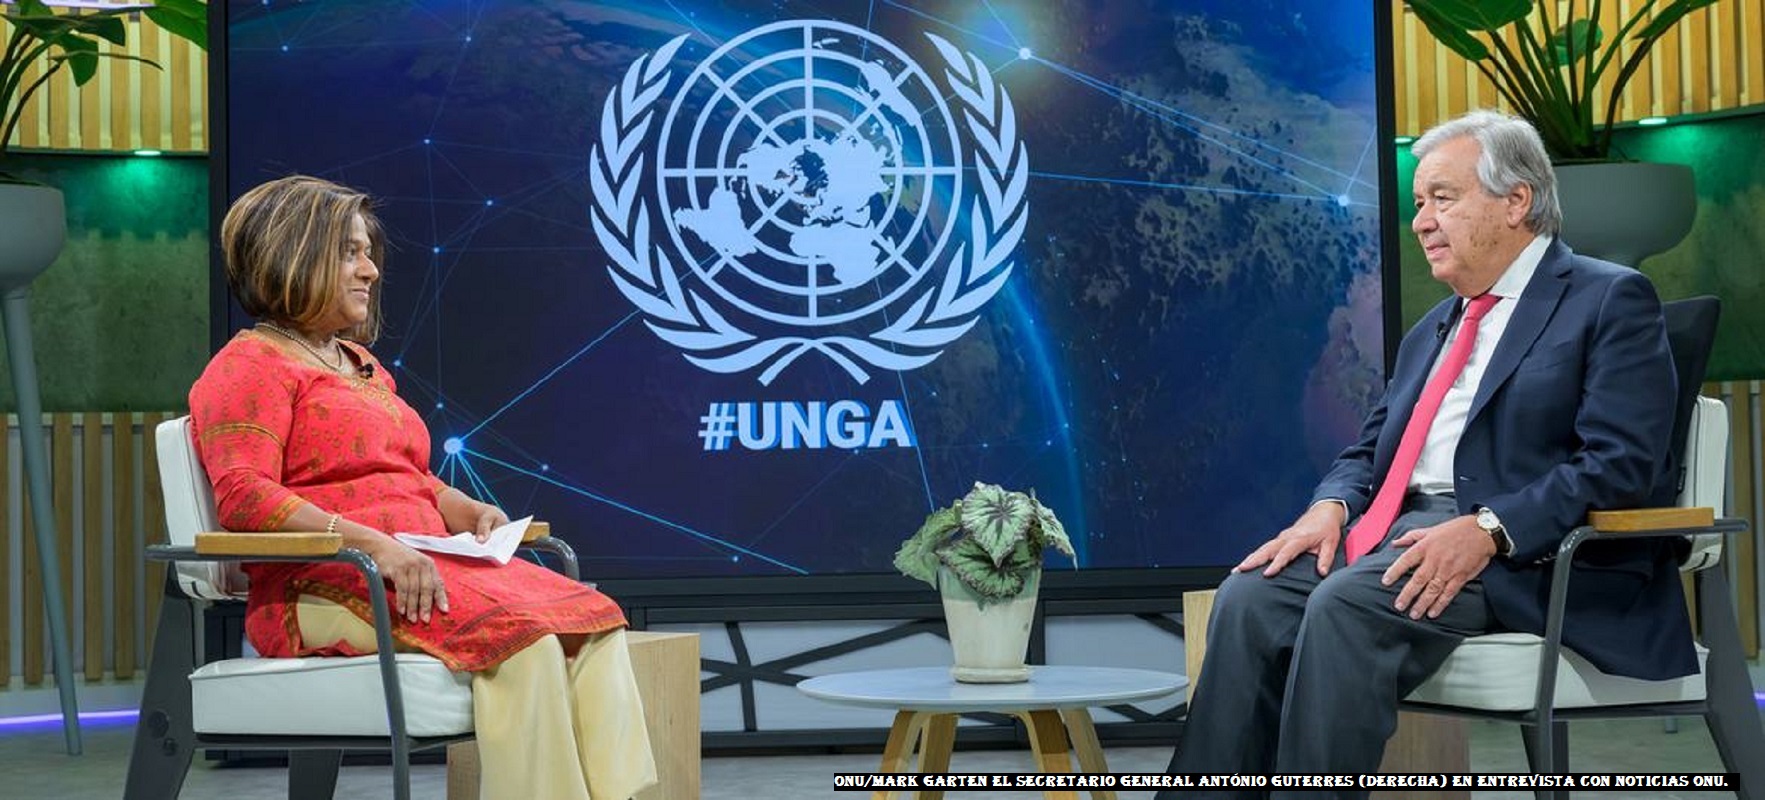 António Guterres (ONU) los países deben cumplir sus promesas sobre clima y desarrollo, importa menos quién venga y más lo que se haga.